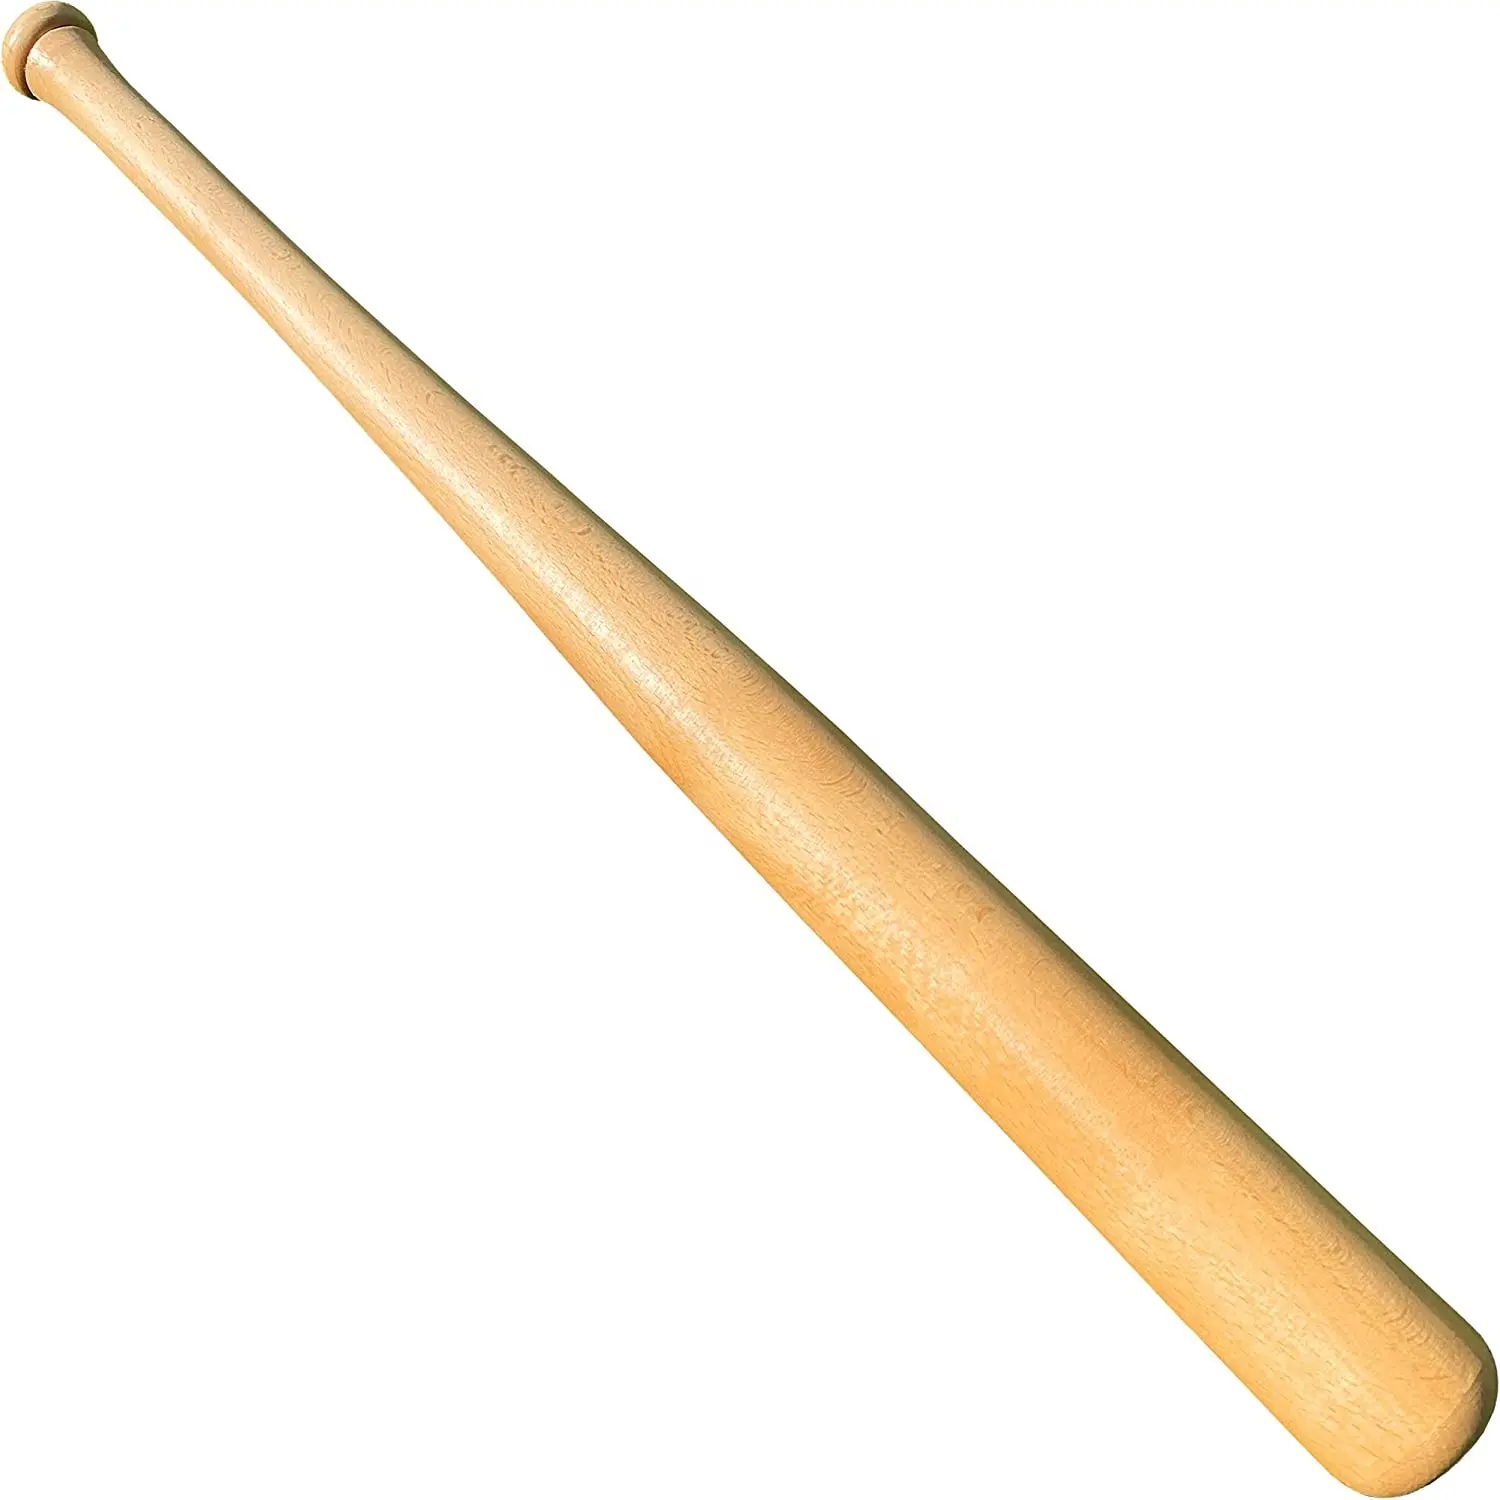 ไม้ตีเบสบอลคอมโพสิตไม้สำหรับฝึกแบบมืออาชีพ,ไม้บีชแข็งแบบลูกค้างคาวซอฟท์บอลทำให้พองได้